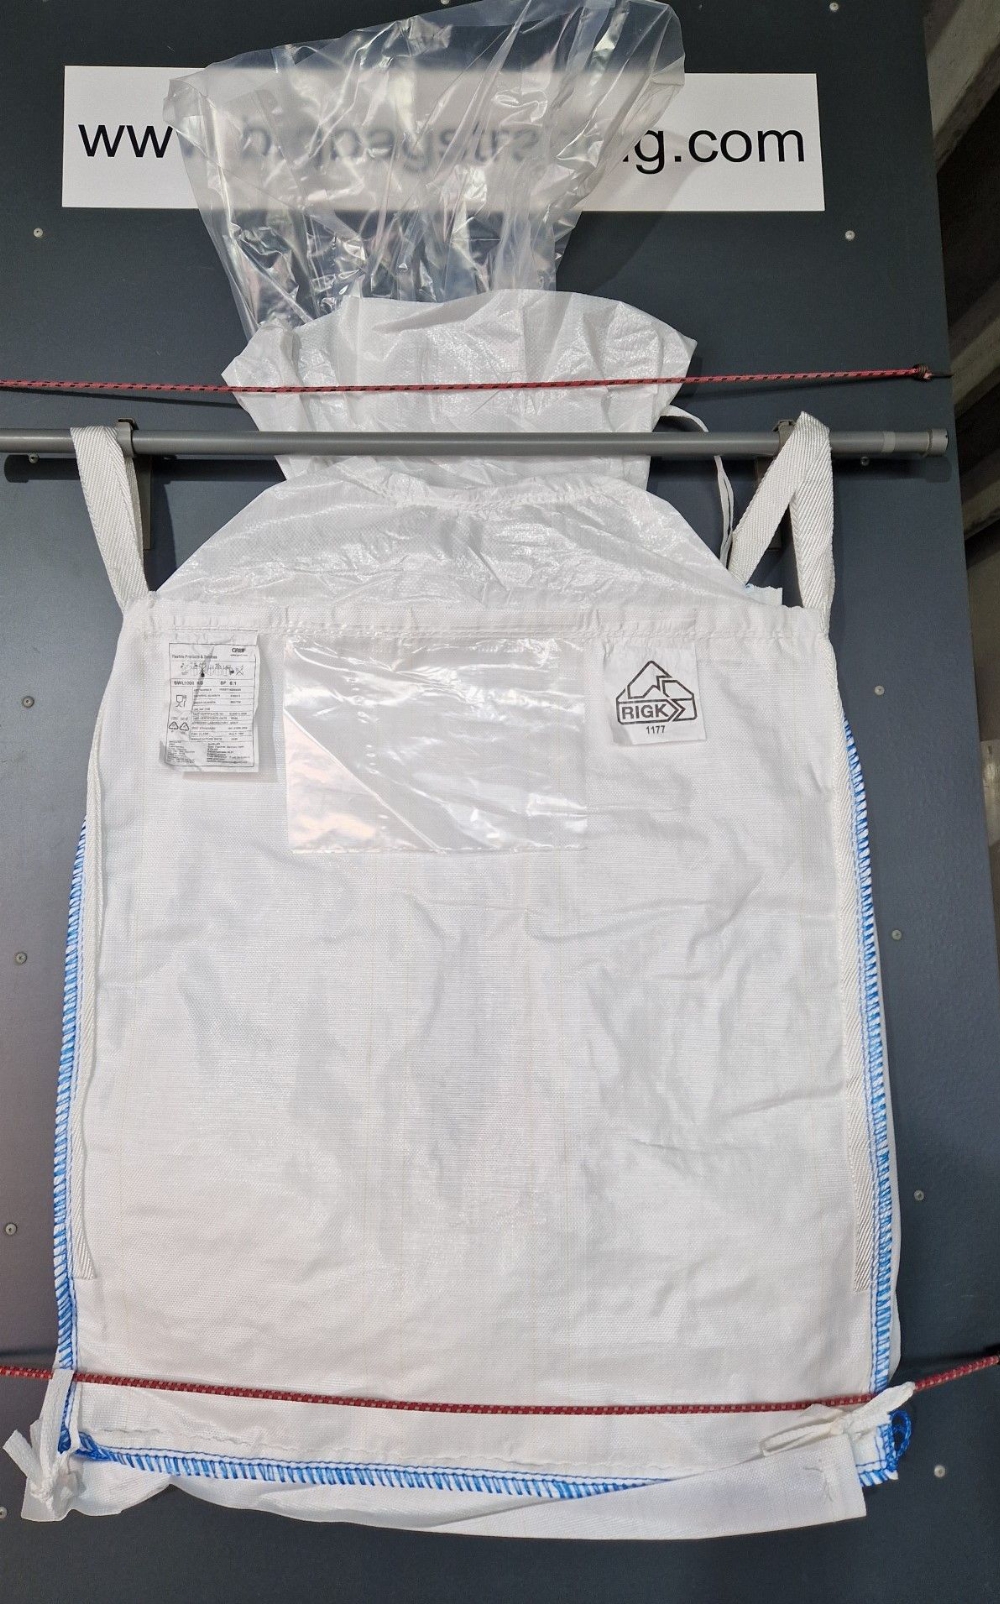 Stocklot big-bag 6.92 87 87 liner